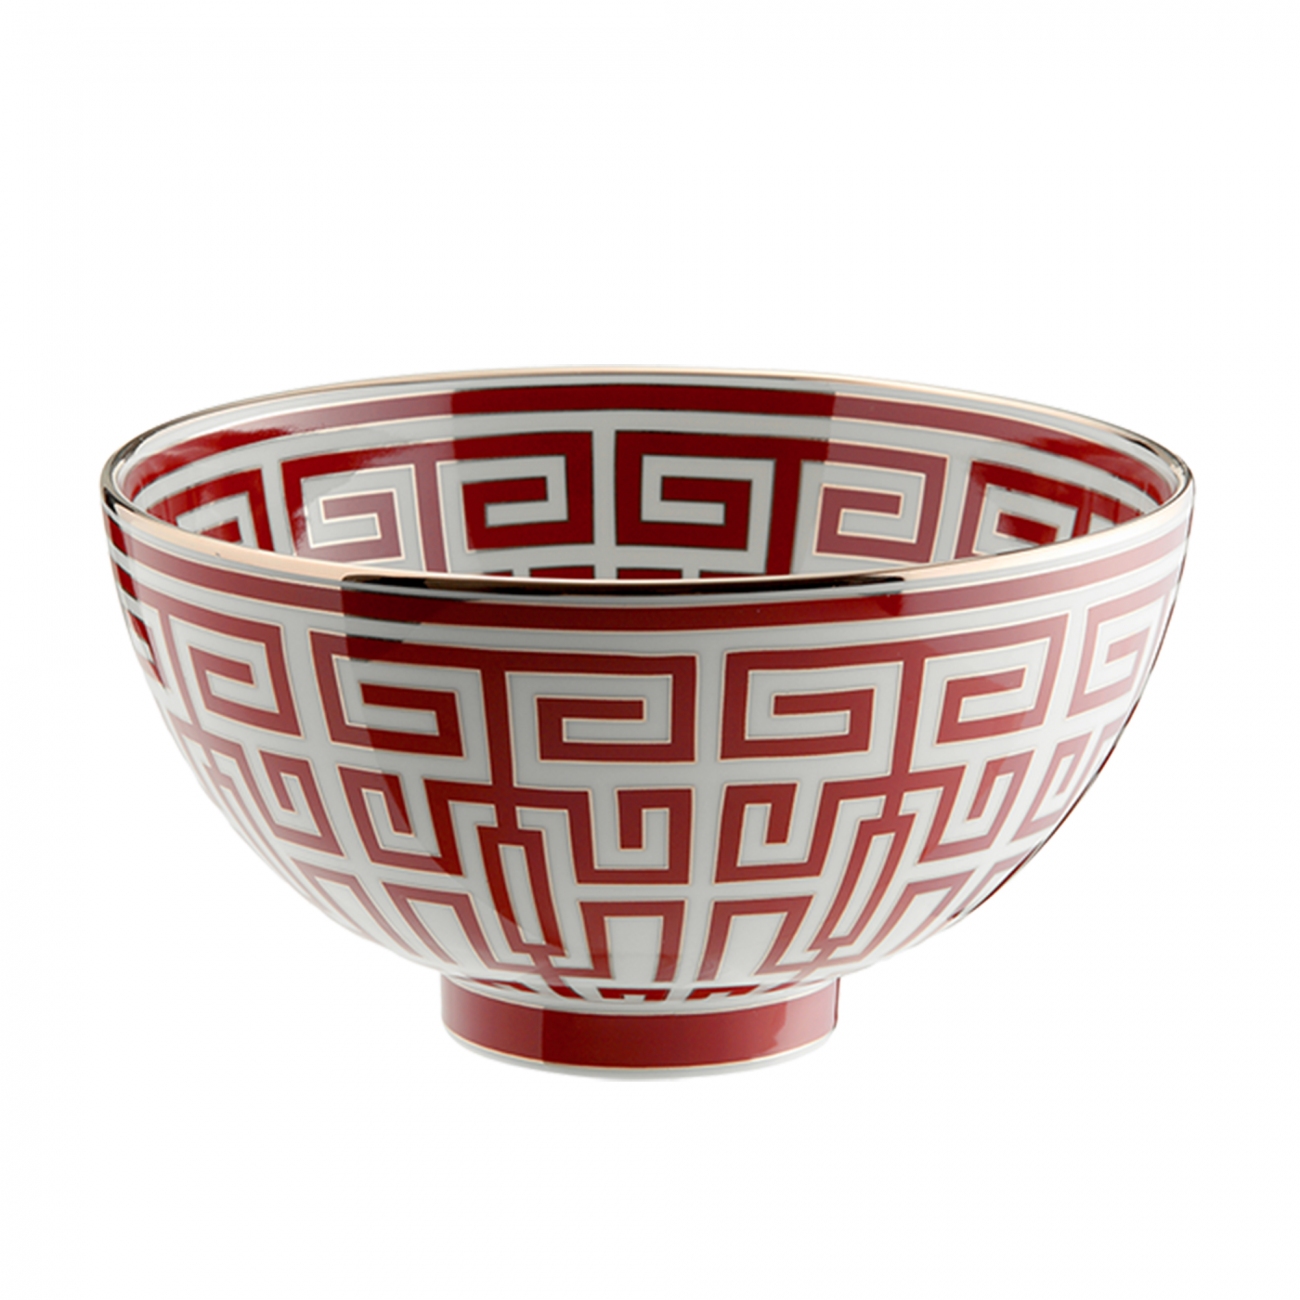 Ginori 1735 Labirinto Gio Ponti bowl